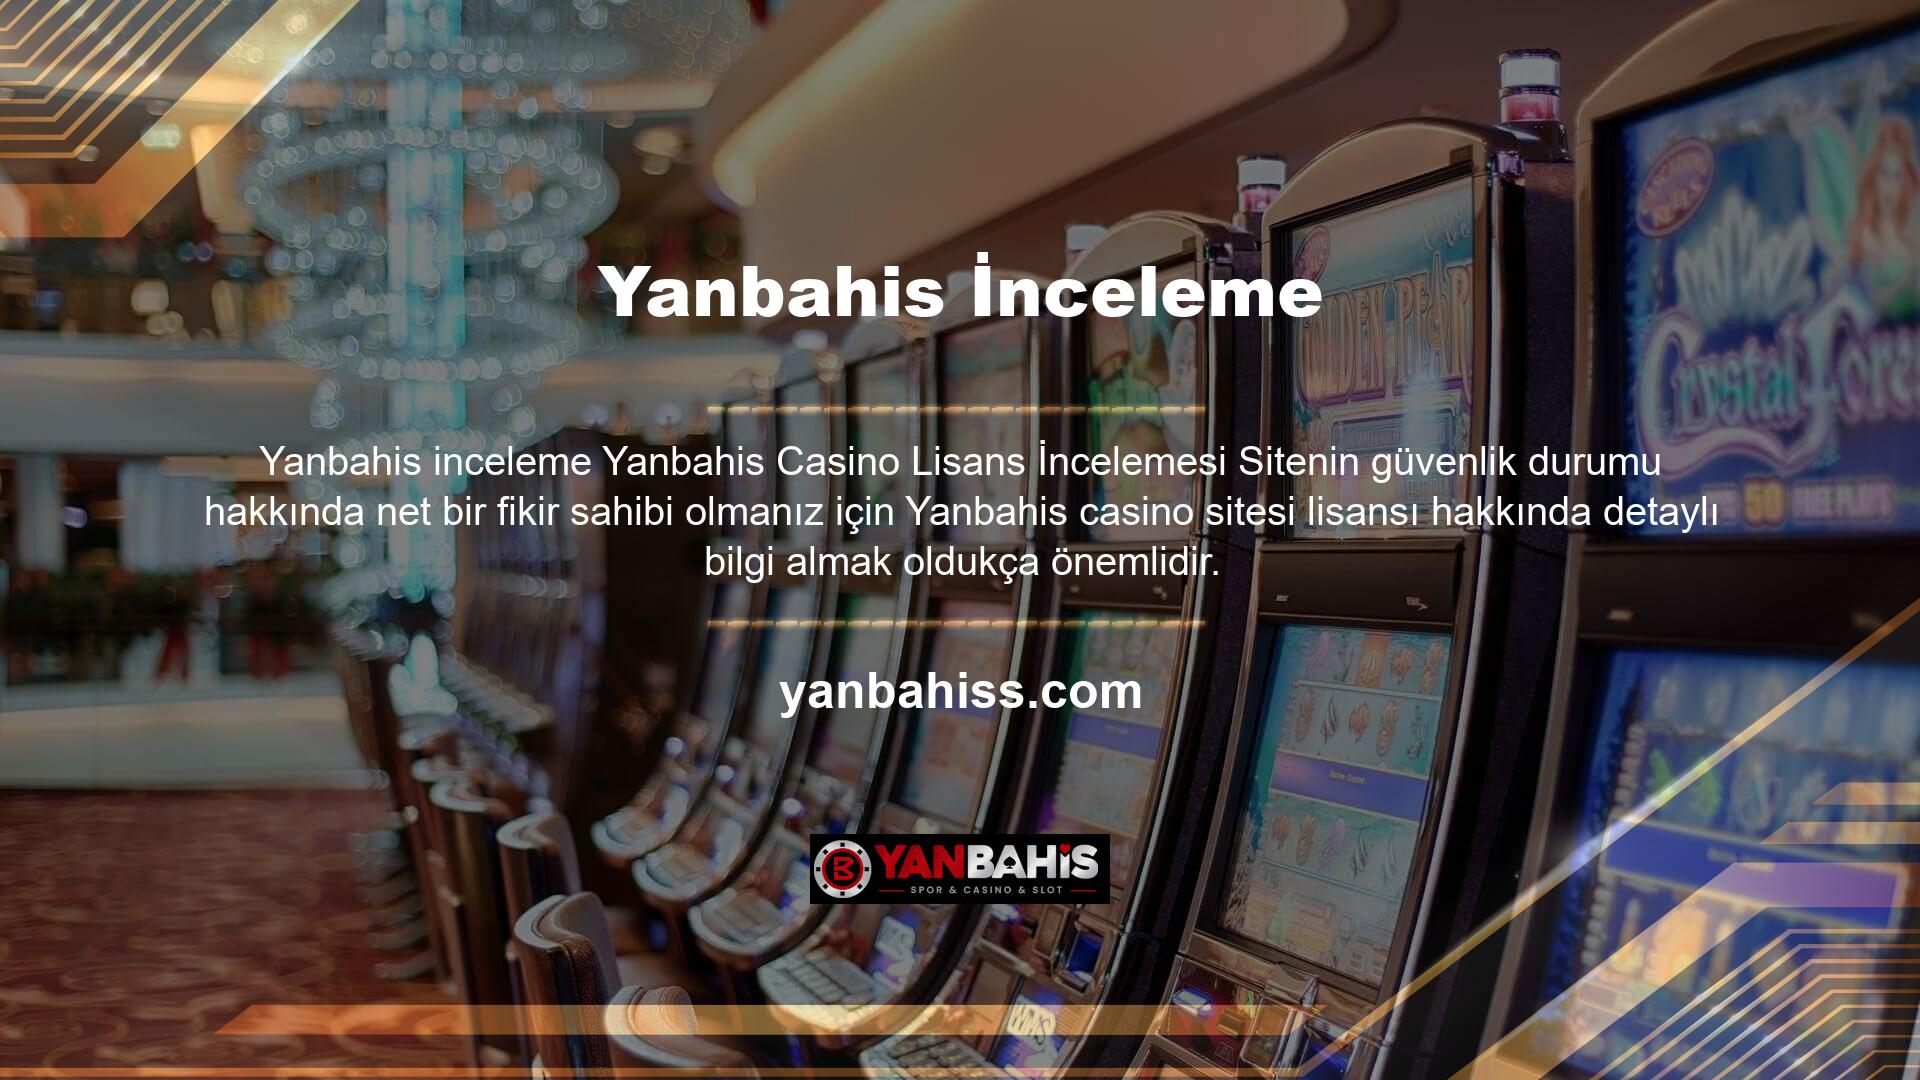 Yanbahis oyun dünyasının en popüler ve güvenilir web sitelerinden biridir